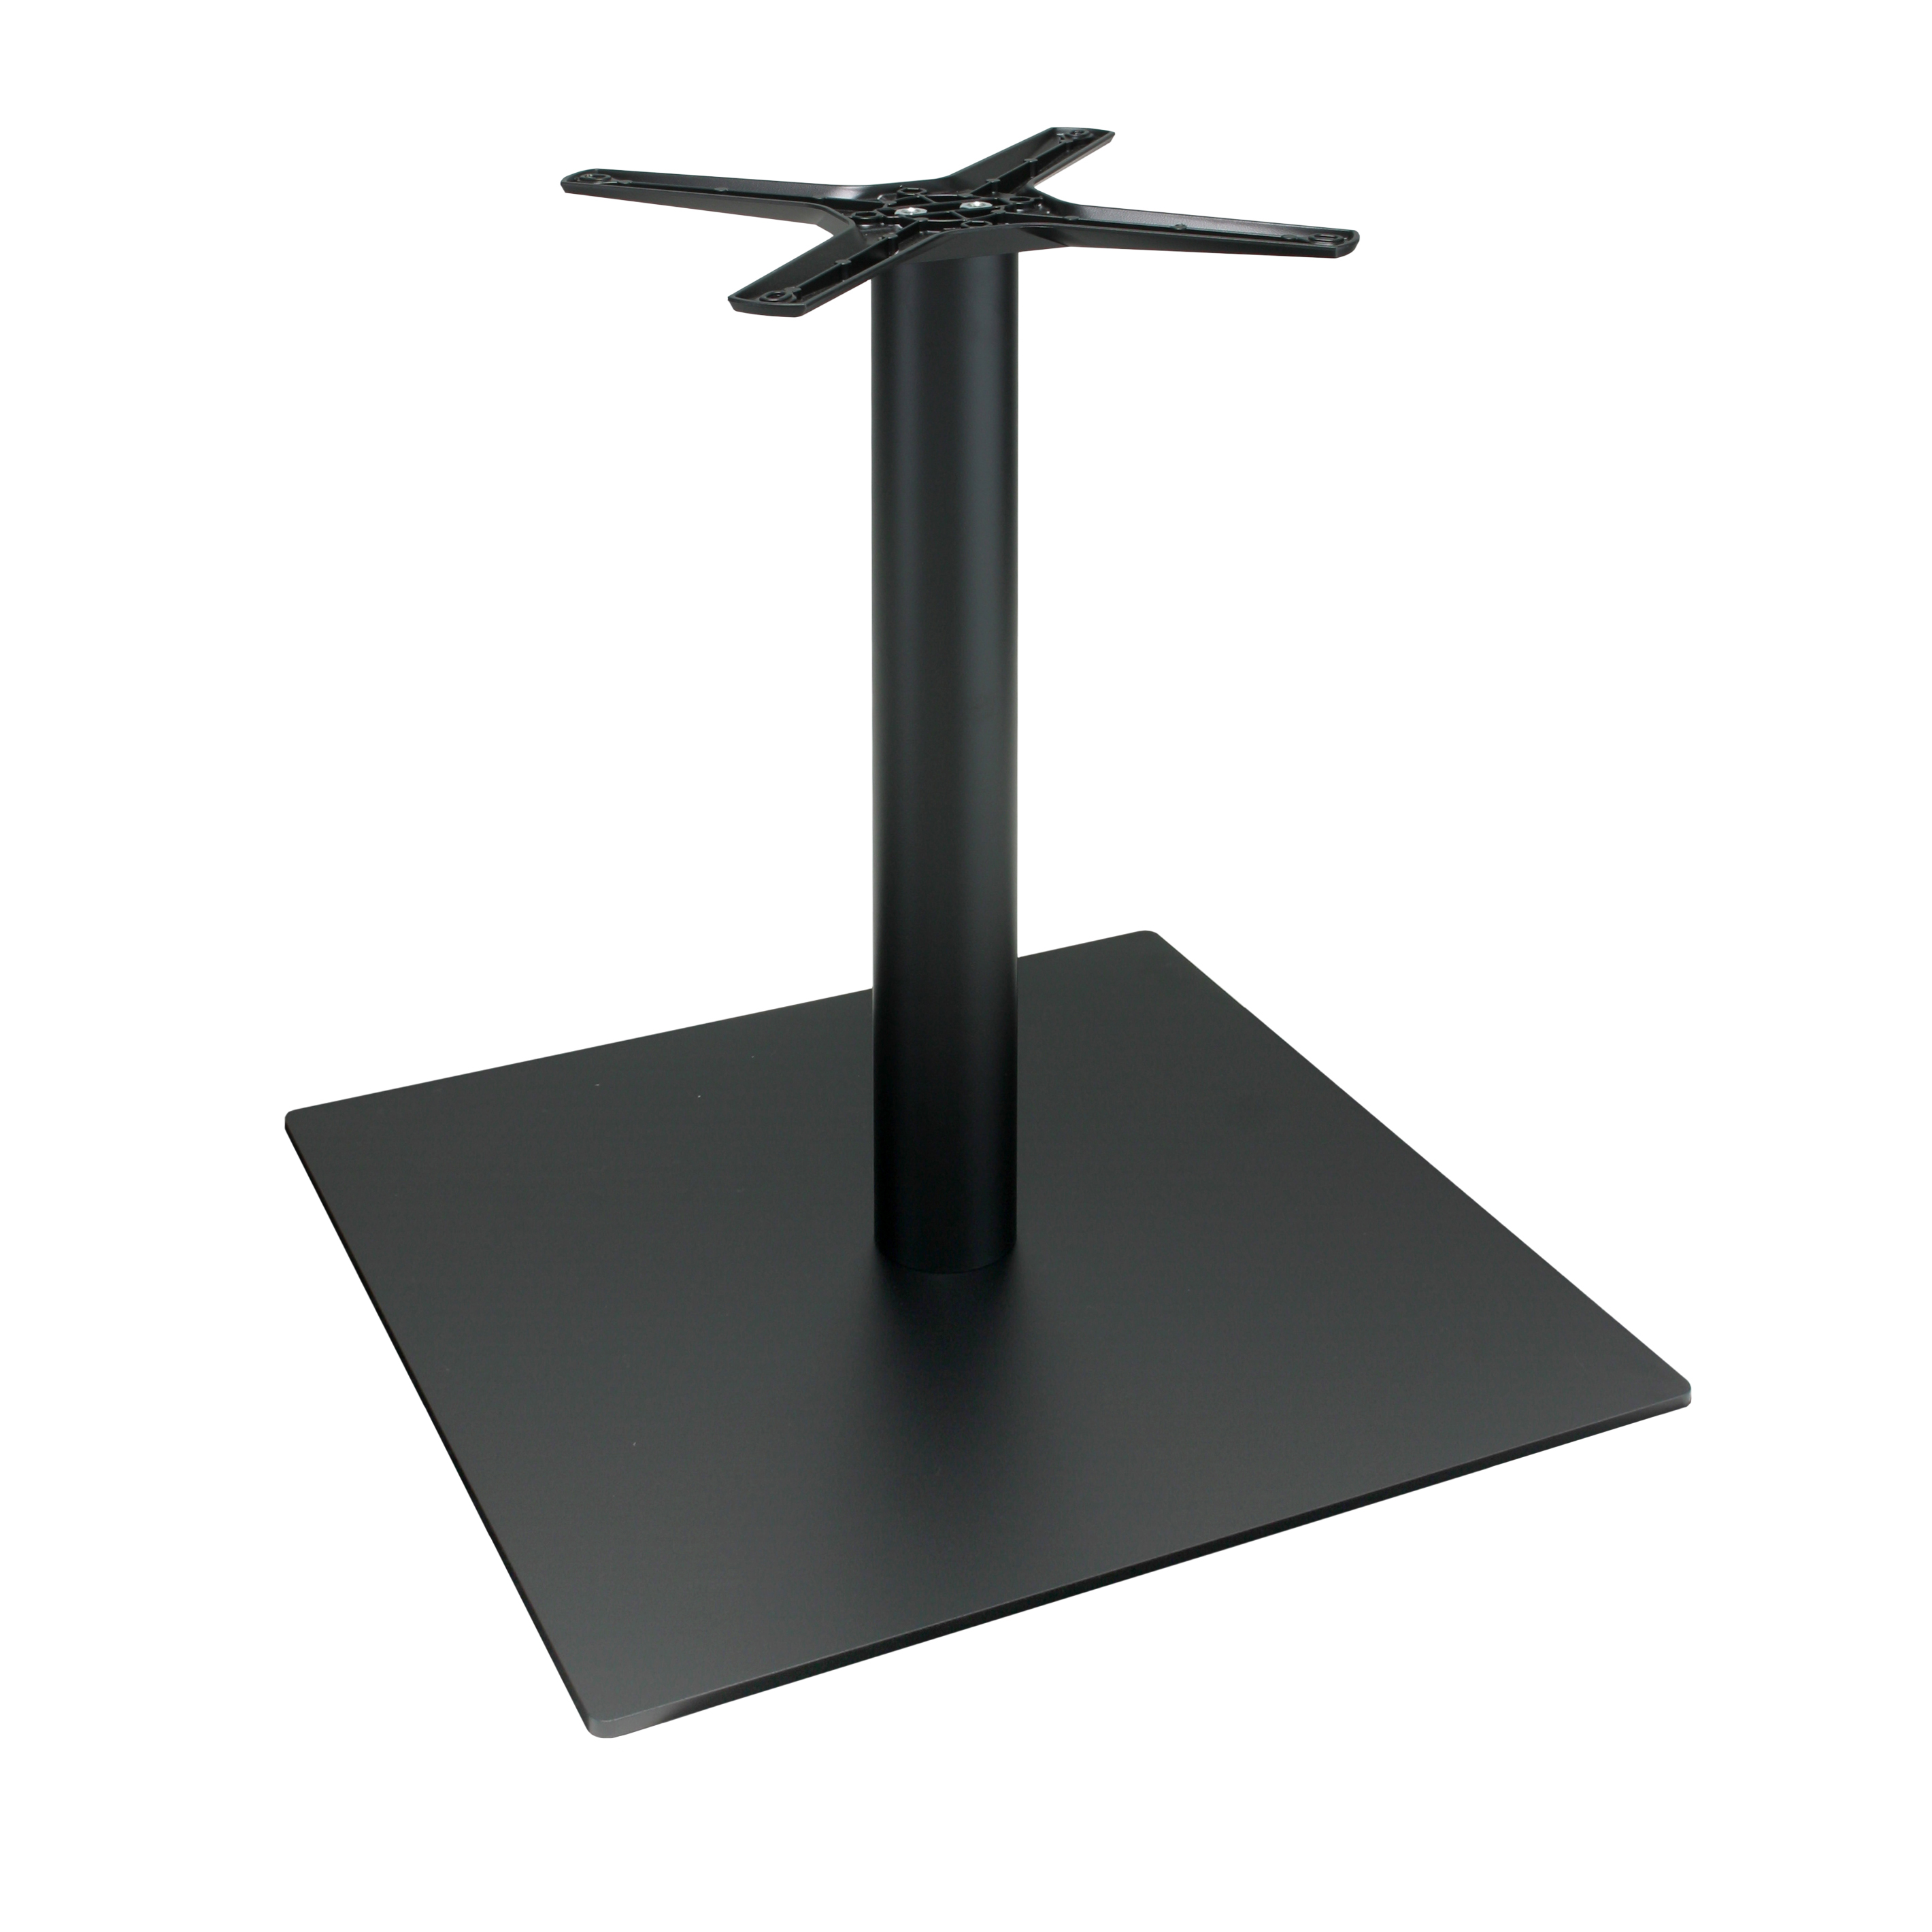 Tischgestell P060F aus Metall - pulverbeschichtet schwarz - quadratisch